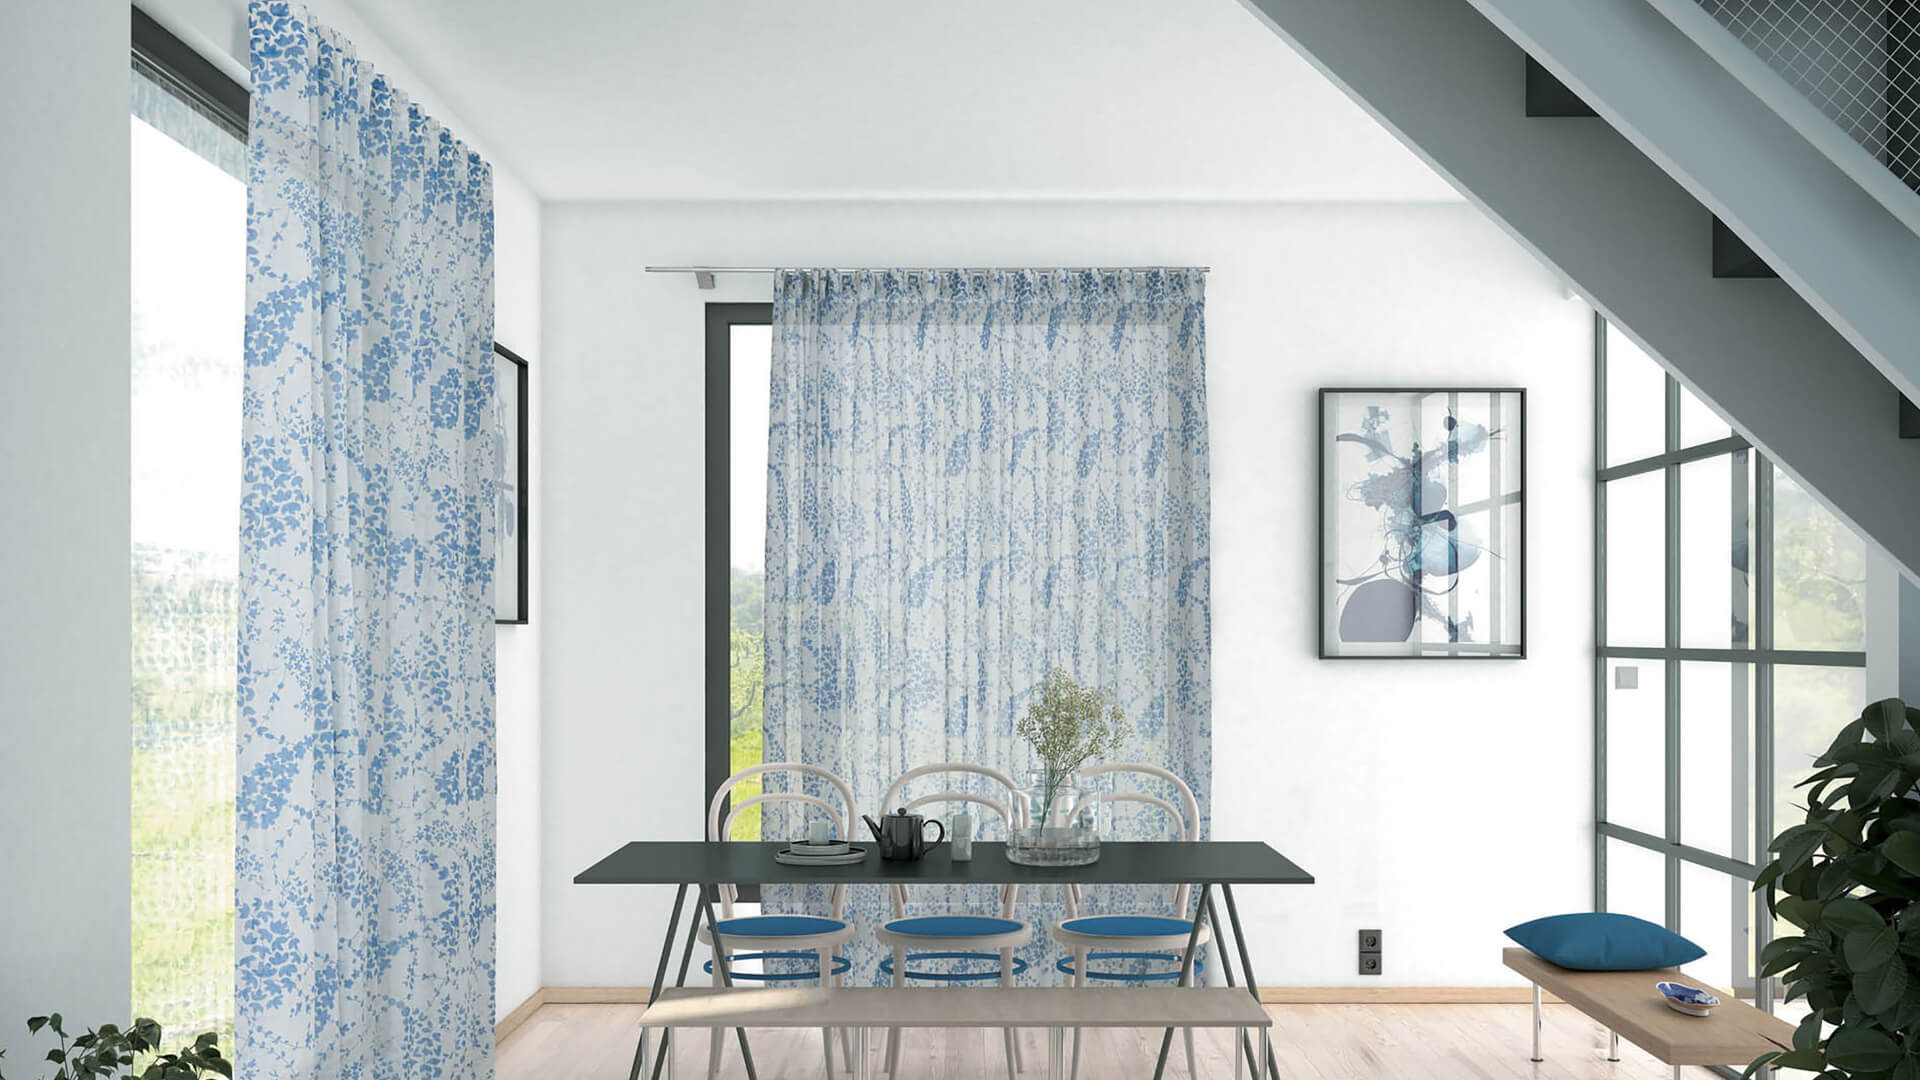 Blog IDW - Come dare un nuovo look al tuo appartamento utilizzando i tessuti